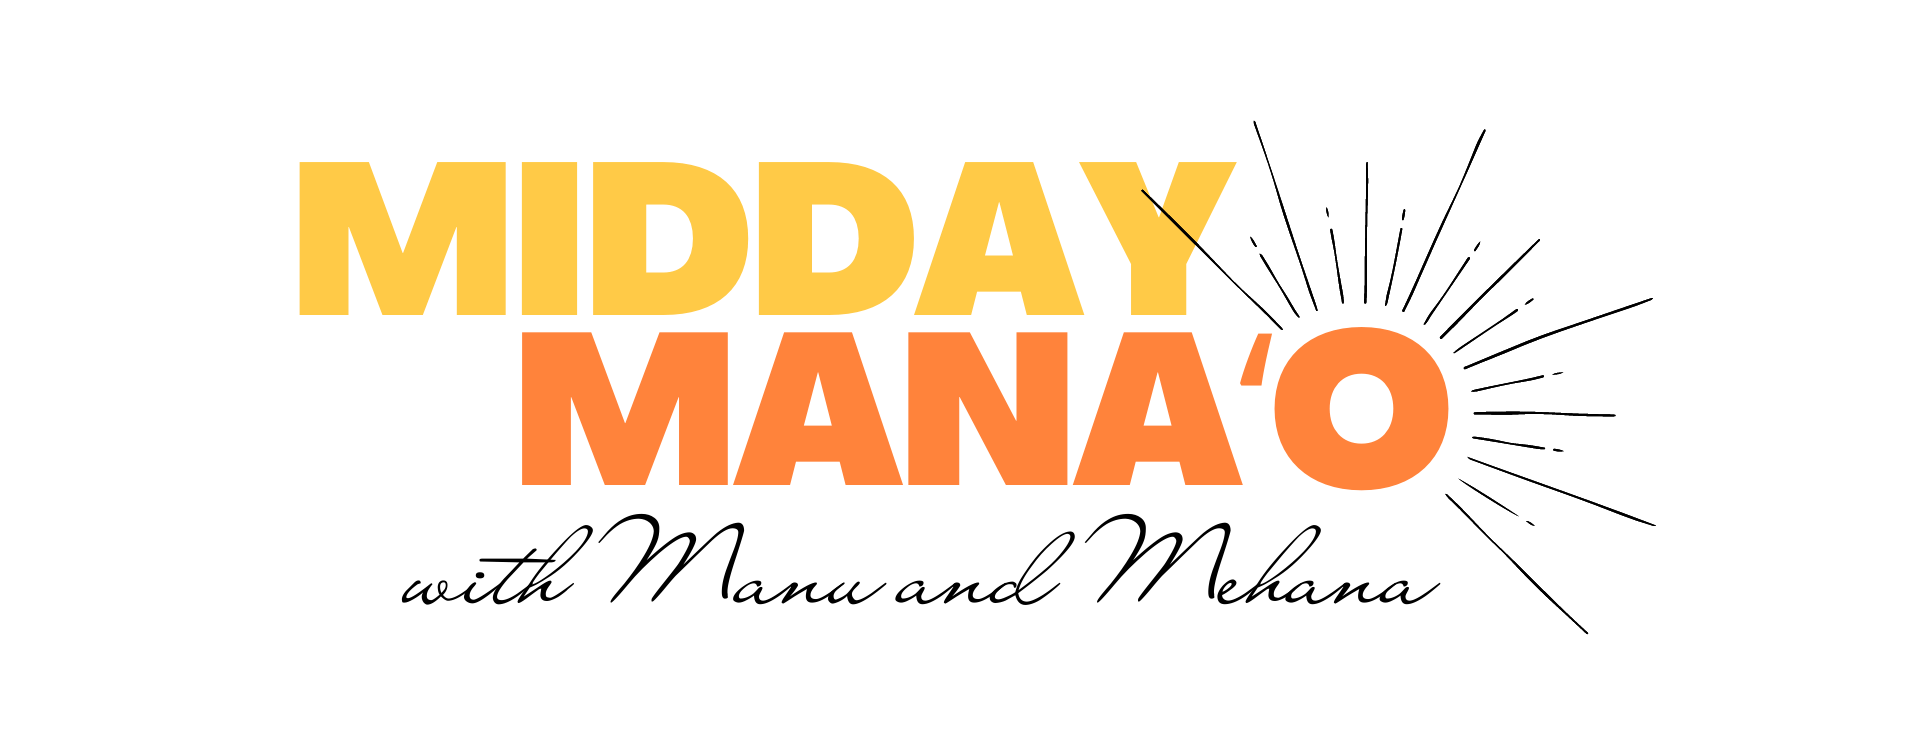 Midday Mana‘o Logo